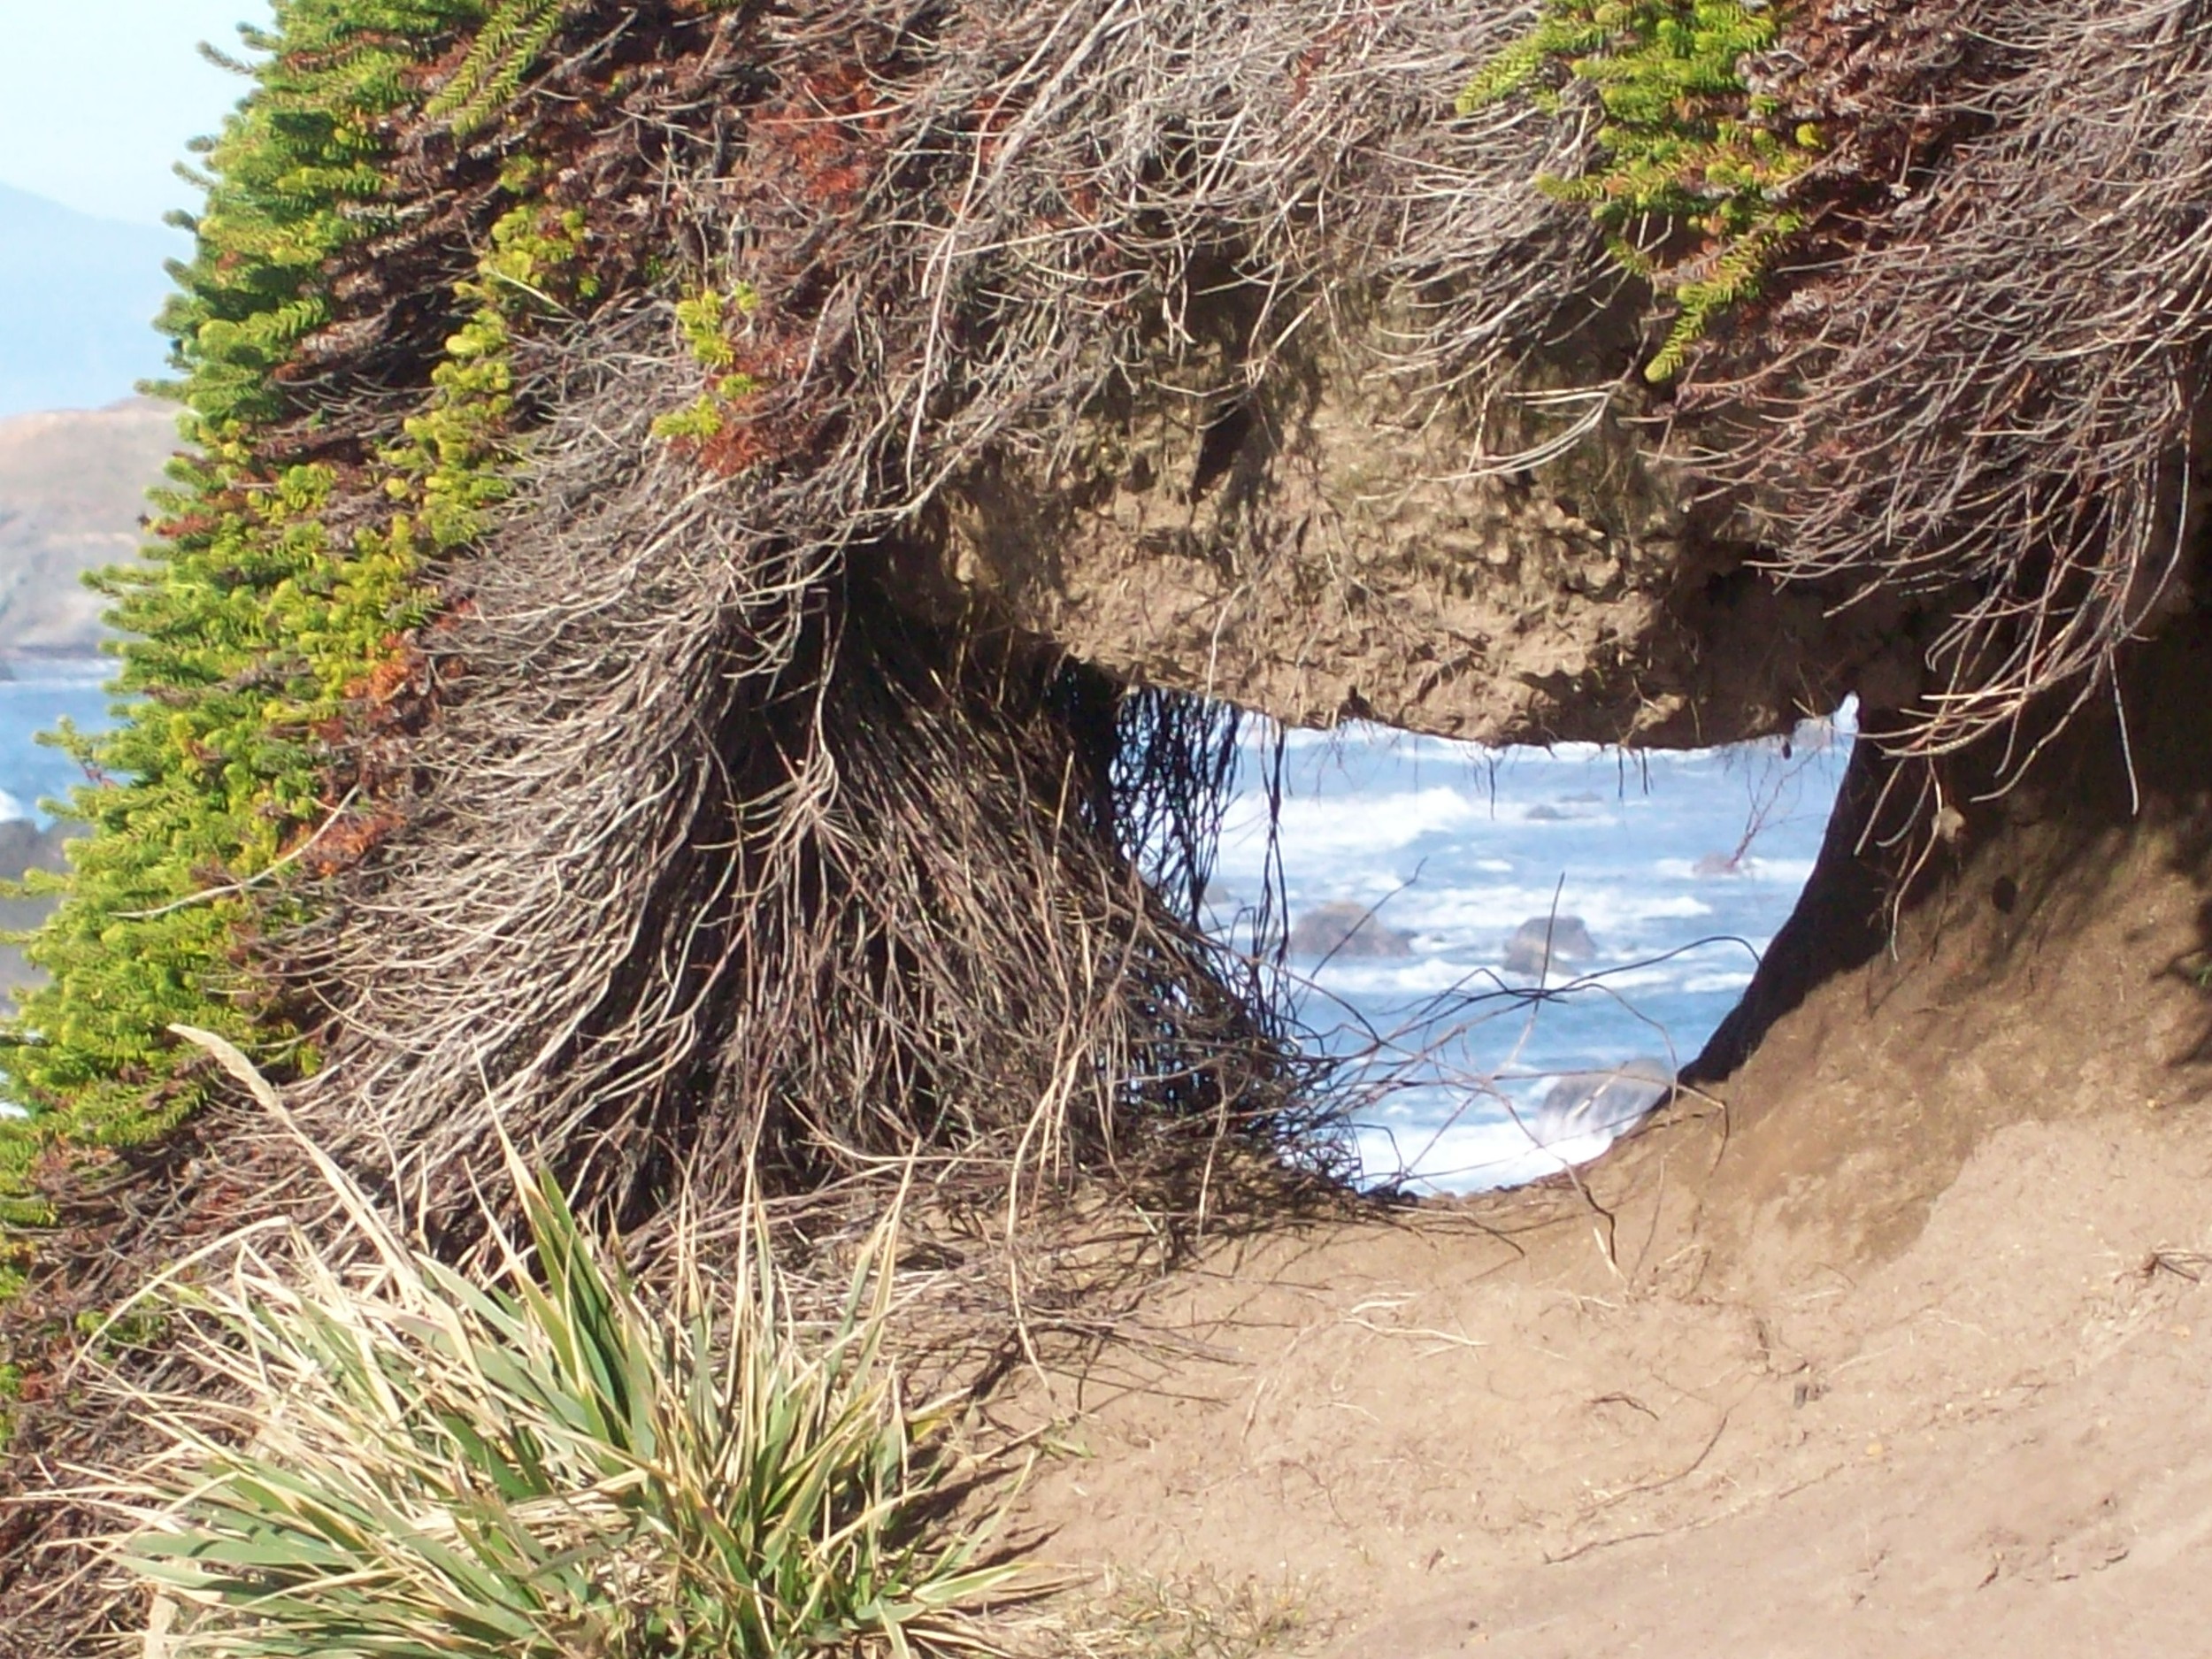 Through the sandy bank